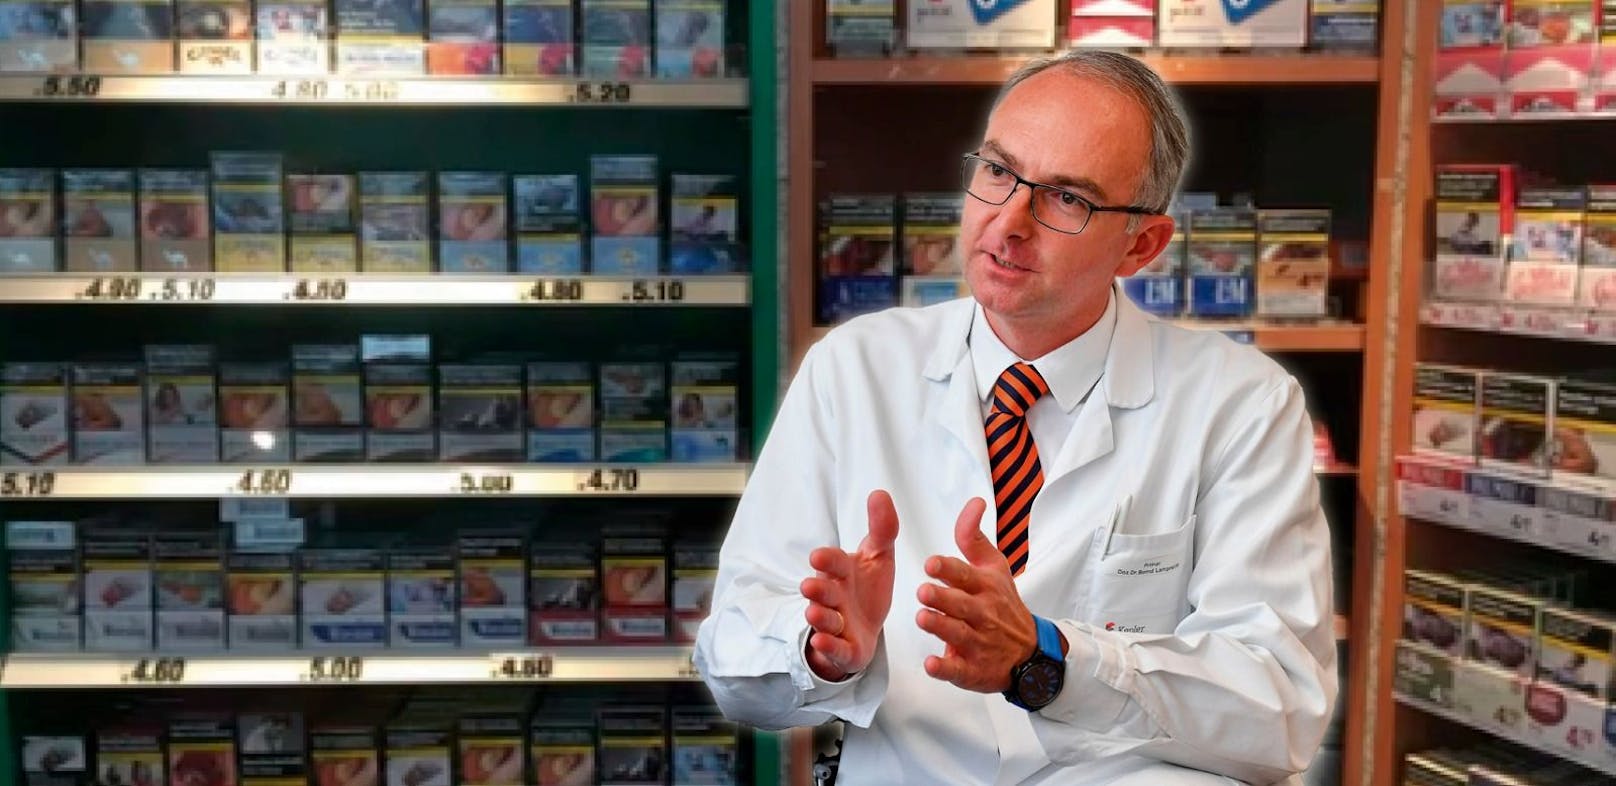 Lungenfacharzt Bernd Lamprecht sieht in der Preiserhöhung eine Chance.